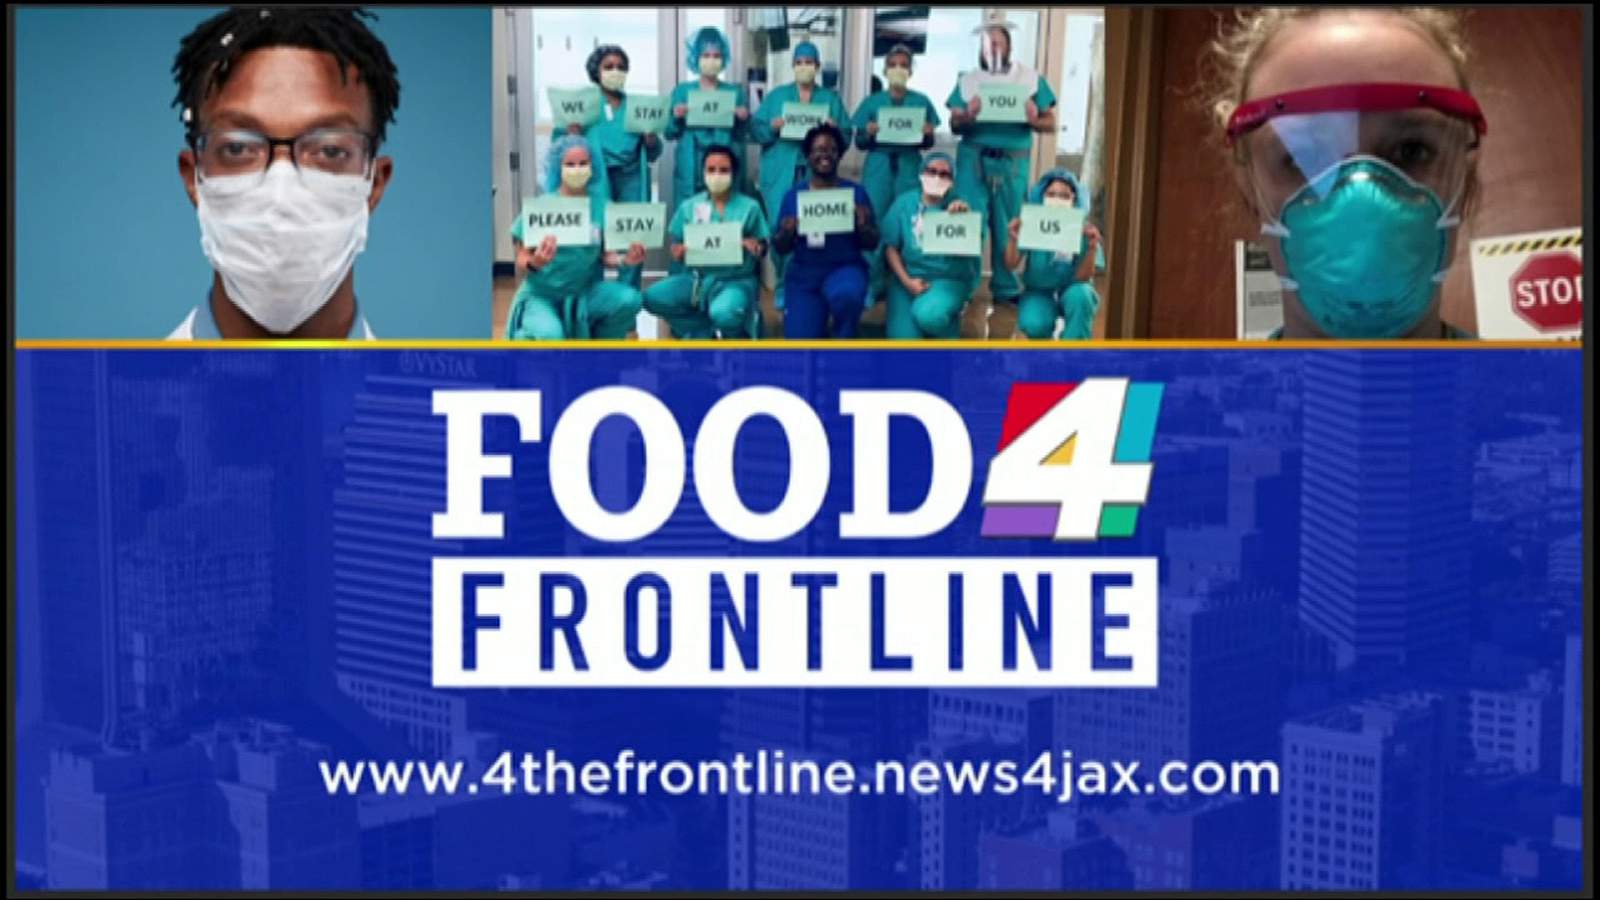 WJXT, News4Jax.com launches effort to help local restaurants, frontline workers